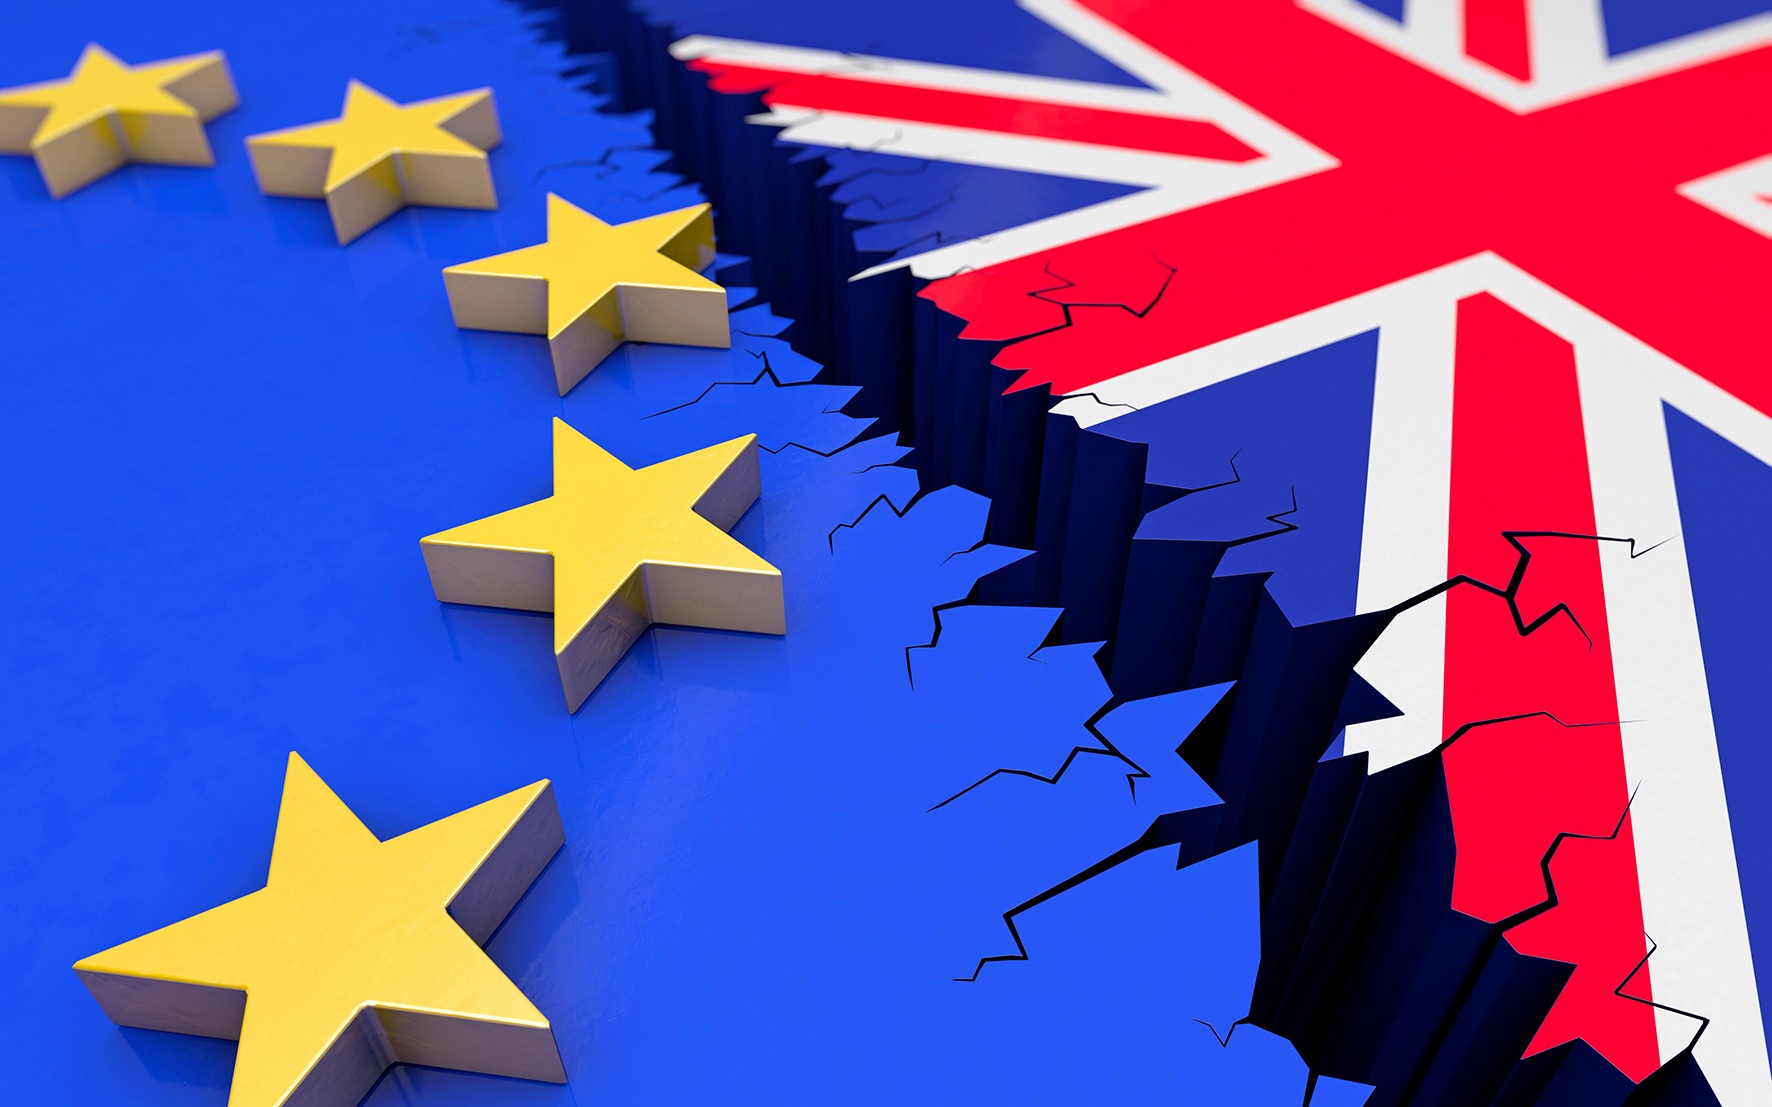 Das Symbolbild zeigt die EU- und Großbritannien-Flaggen mit einem Riss dazwischen.  (Bild: © bluedesign, AdobeStock)